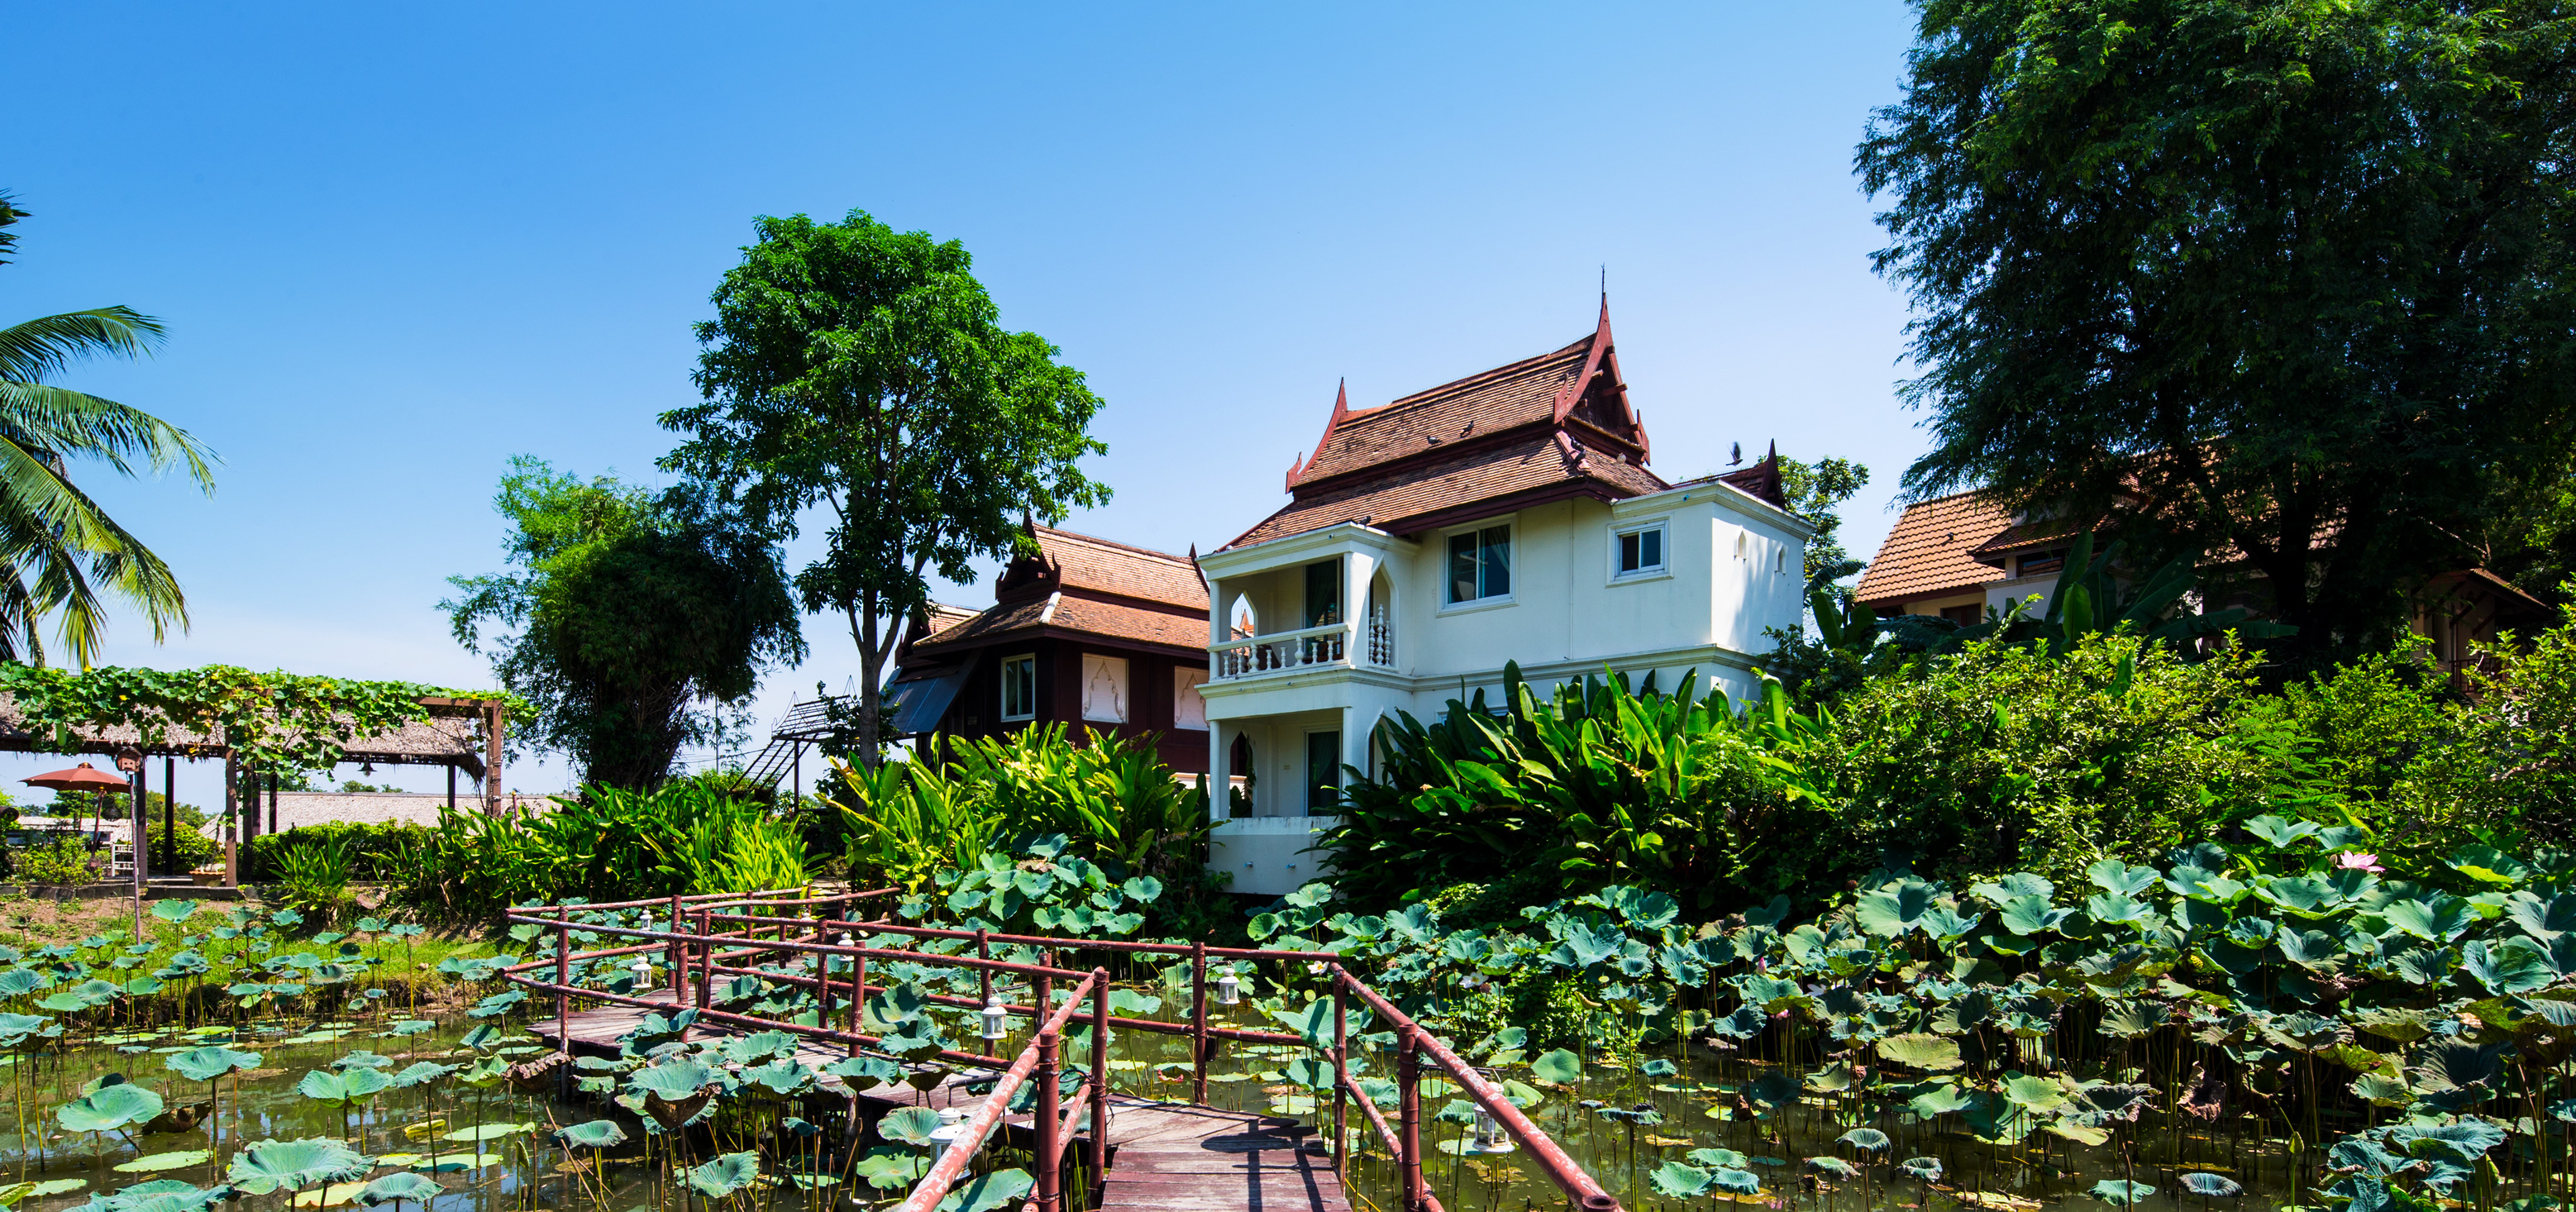 Ayutthaya Garden River Home, Ayutthaya, Thailand